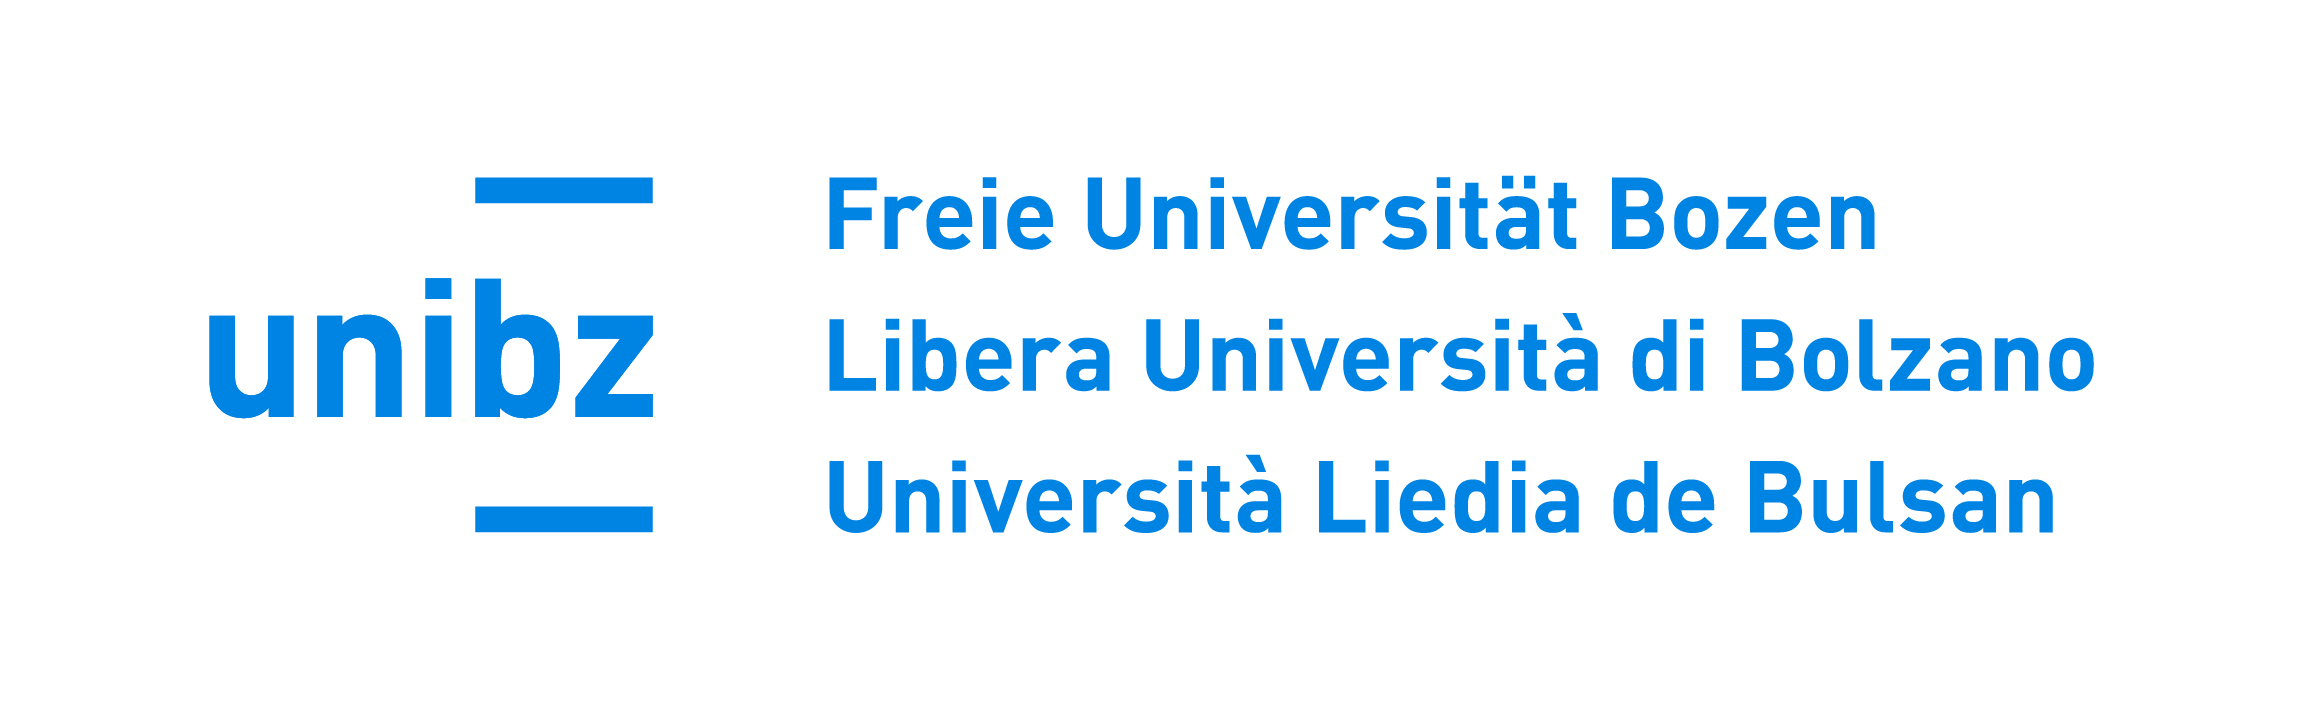 Free University of Bolzano